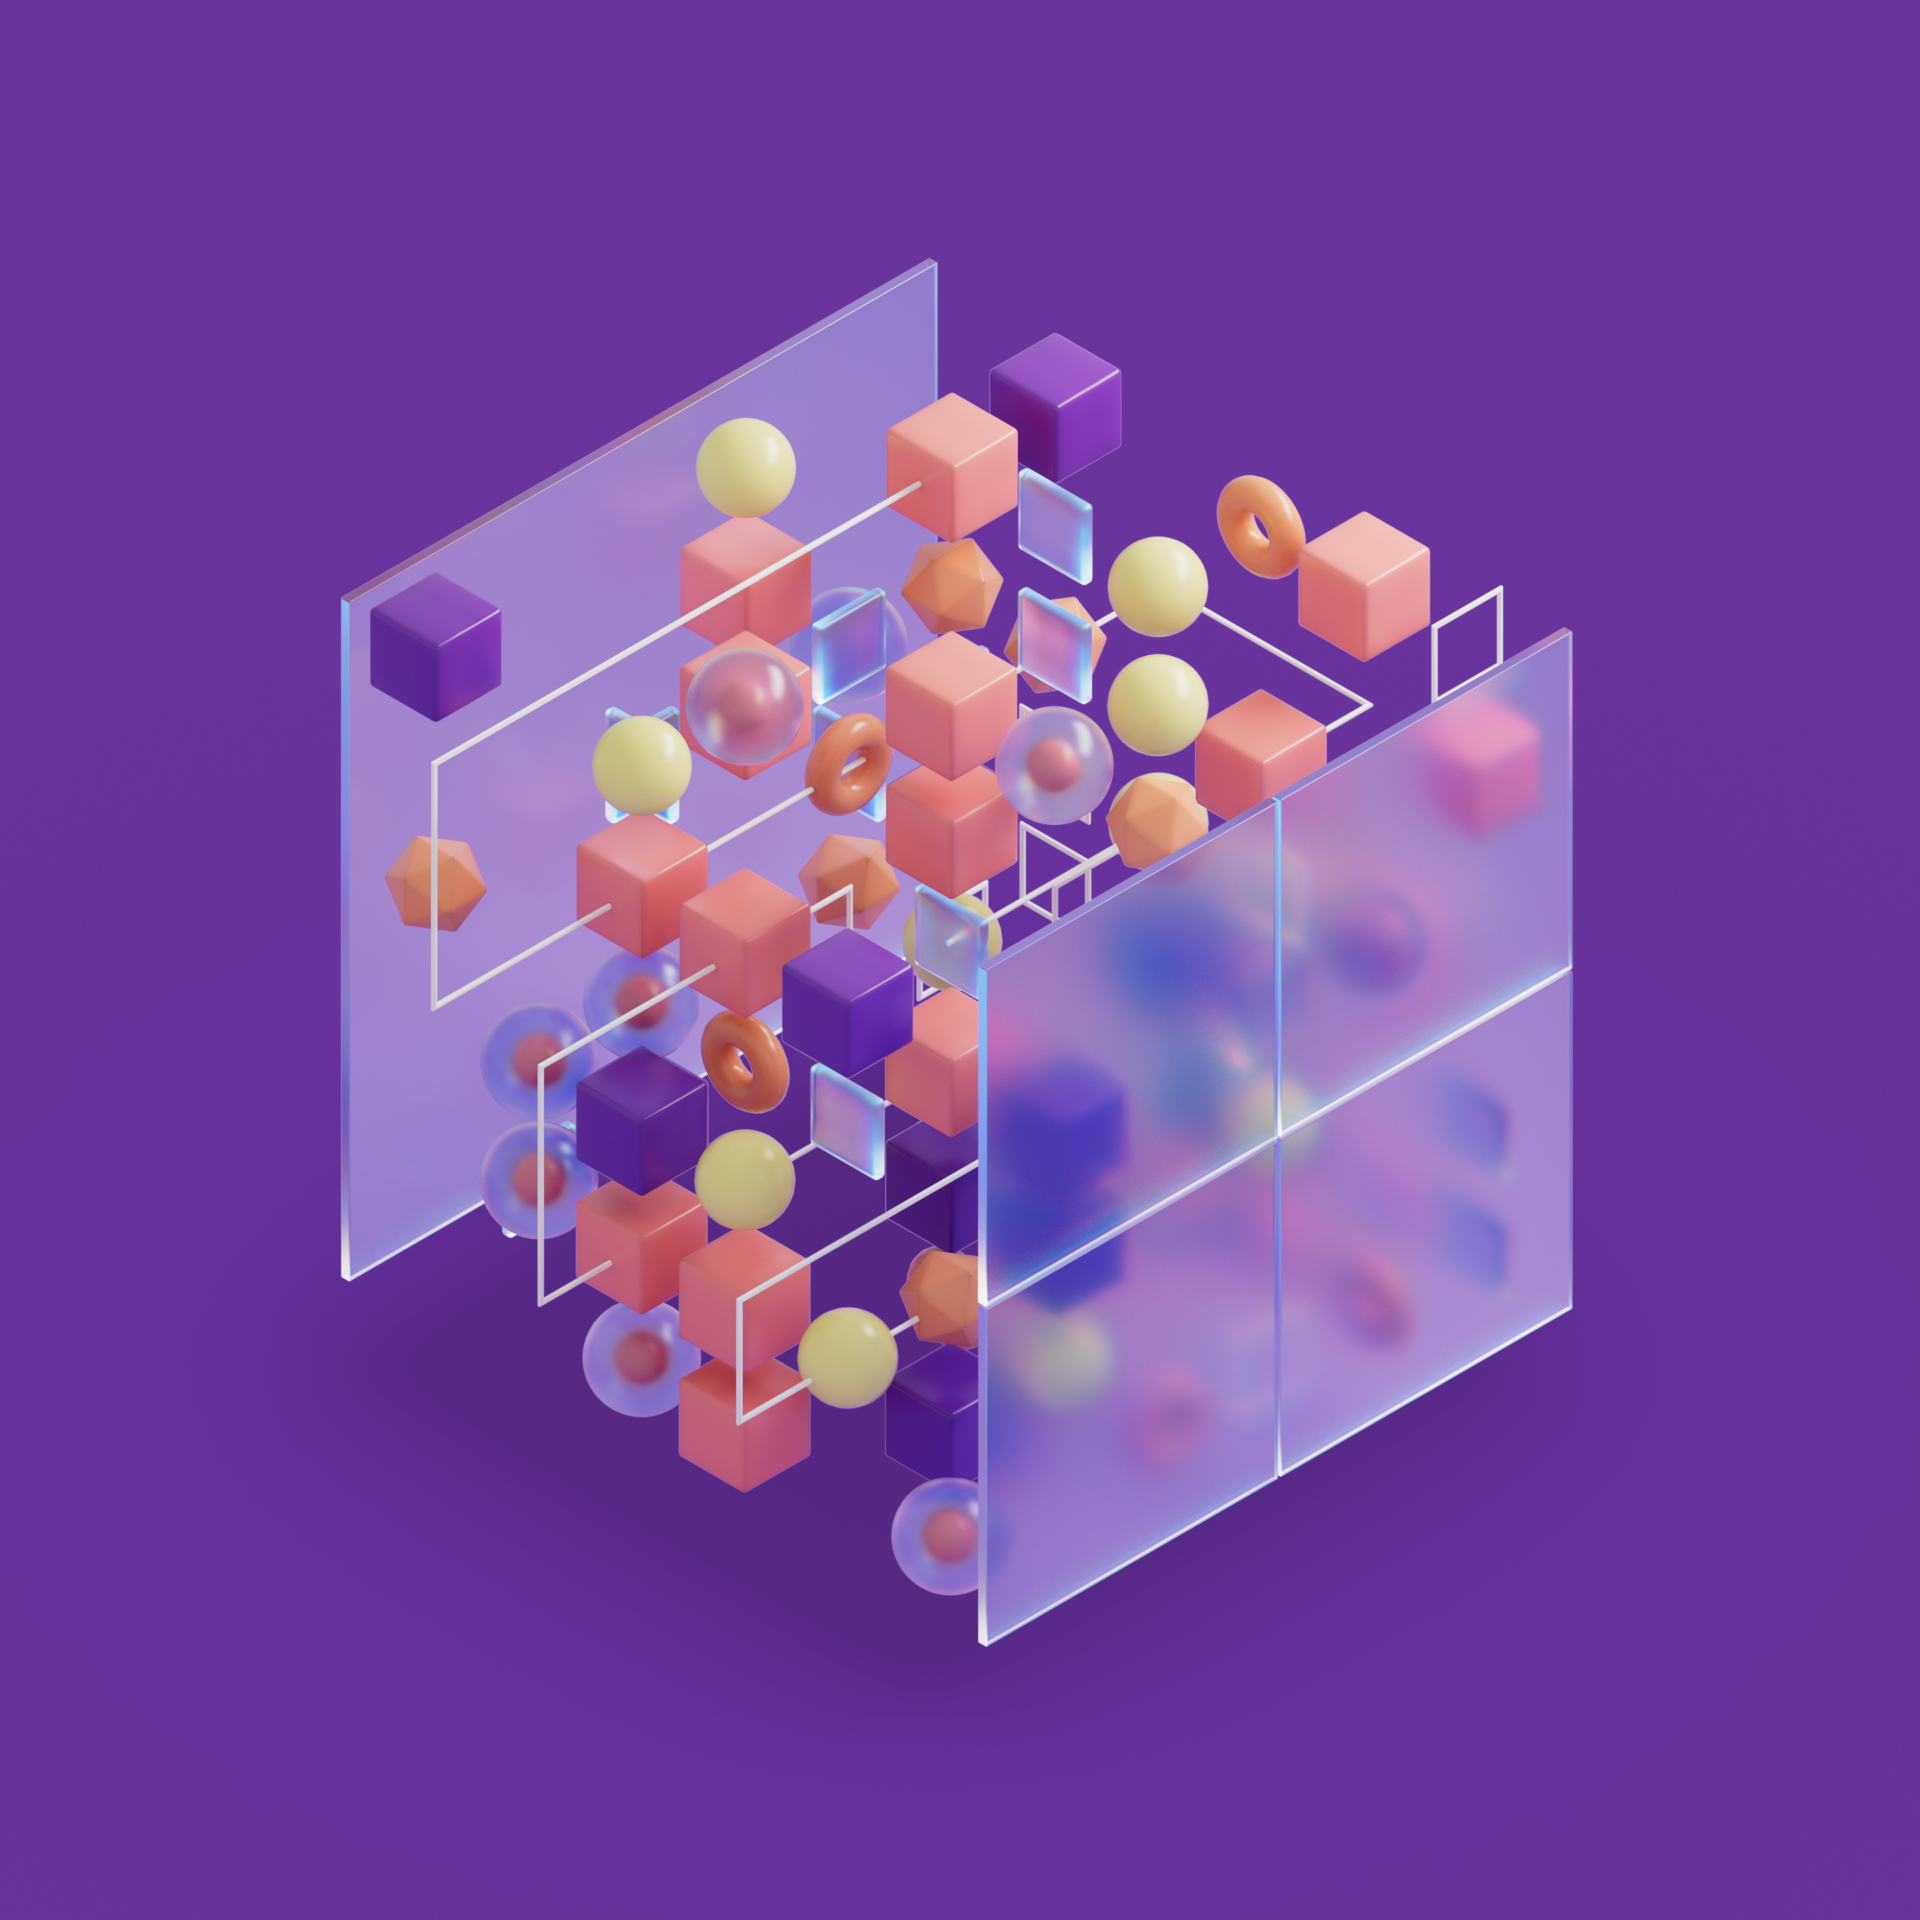 Ilustración de un cubo traslúcido con figuras geométricas coloridas dentro de él